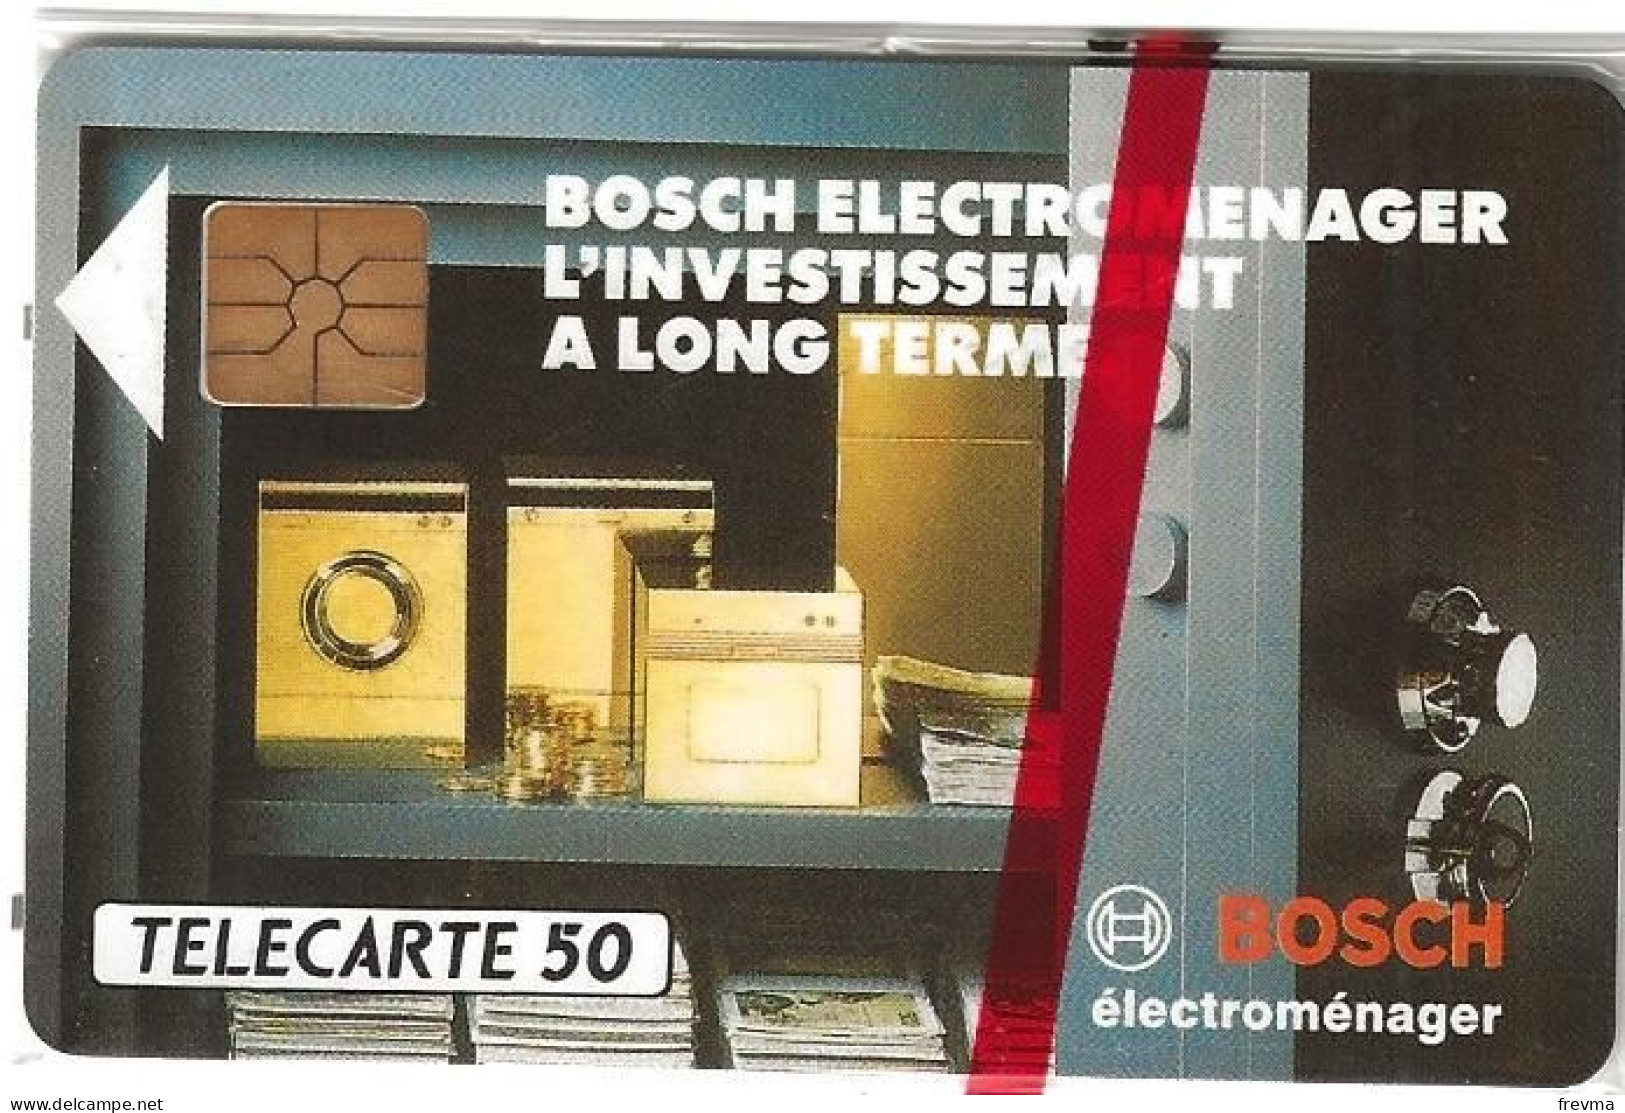 Telecarte E330 Bosch Electromenager 50 Unités NSB GEM - Ad Uso Privato